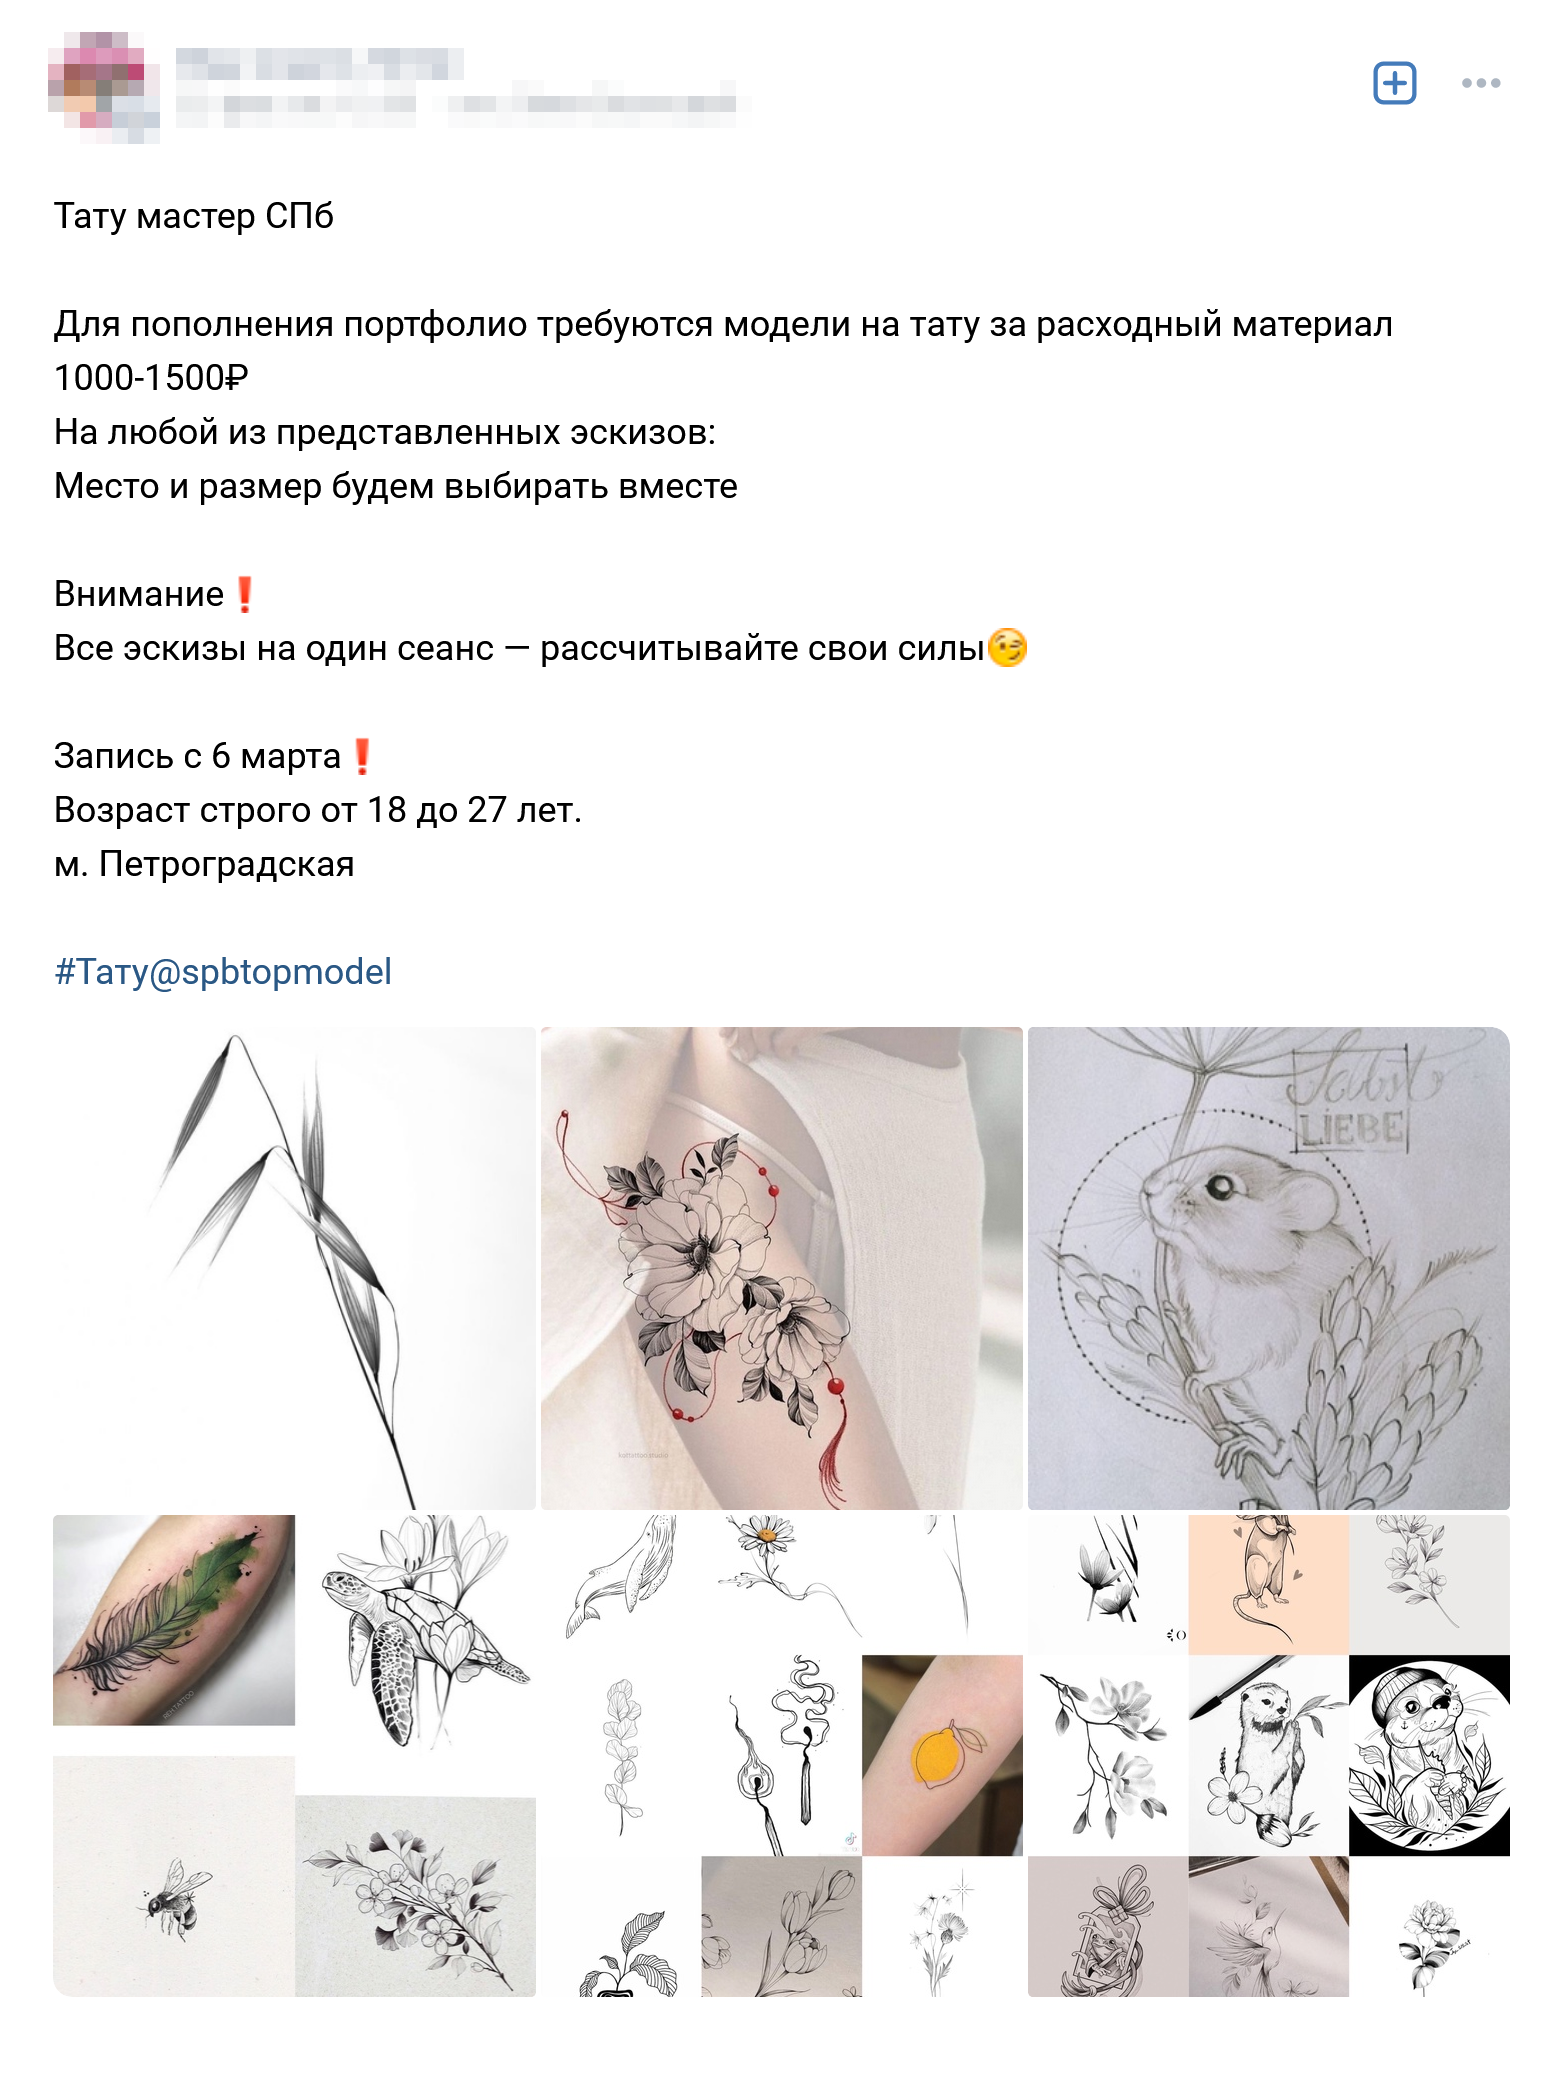 Сделать со скидкой можно даже татуировку. Источник: сообщество во «Вконтакте» «Ищу модель Питер»